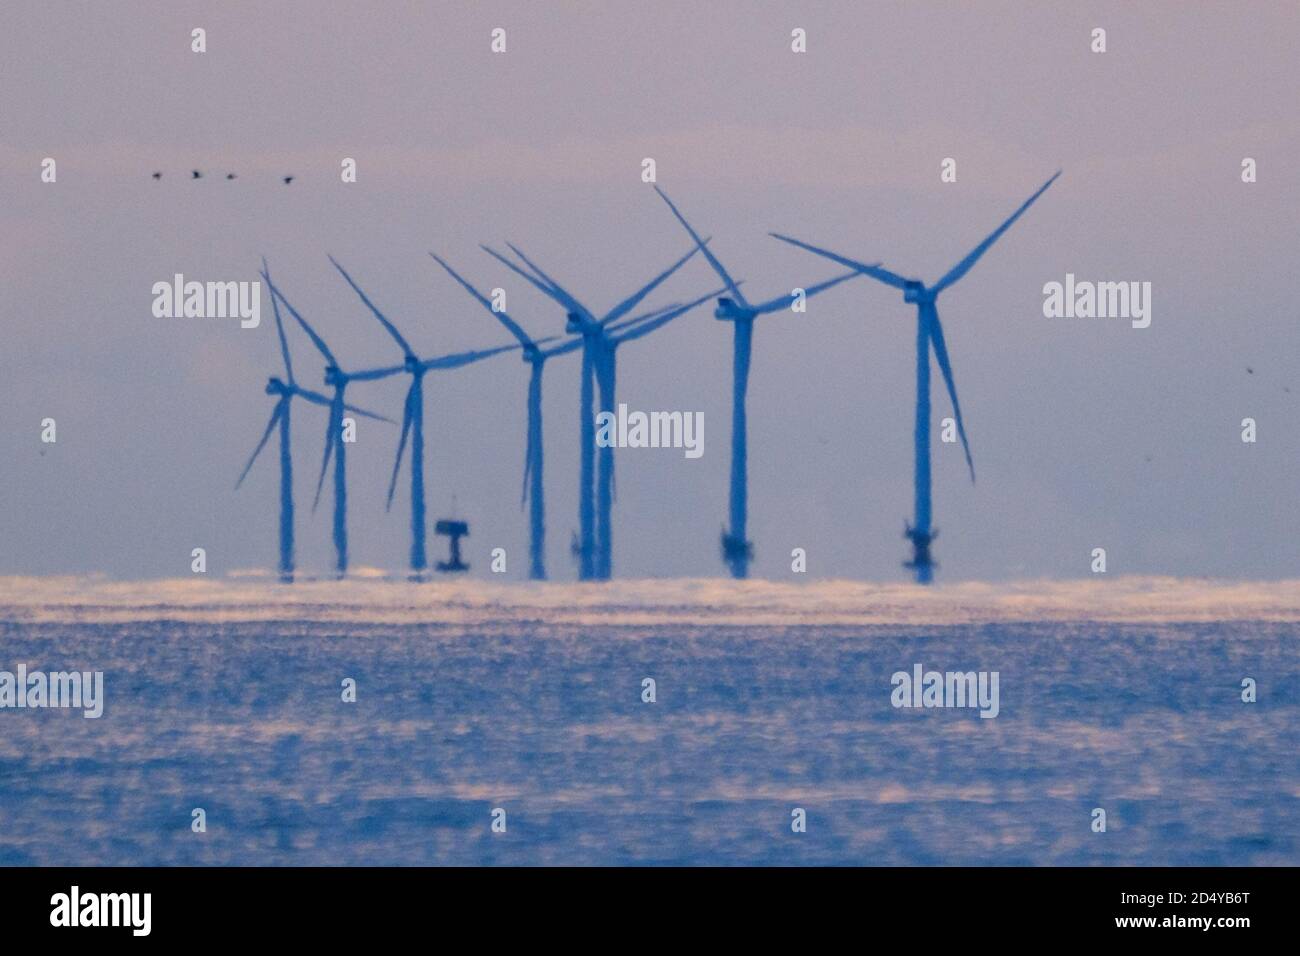 Worthing Beach, Worthing, Reino Unido. 12 de octubre de 2020. Rampion Offshore Wind Farm en una tranquila mañana del lunes de octubre. Terminado en 2018, Rampion Offshore Wind Farm genera suficiente electricidad para alimentar el equivalente de casi 350000 hogares del Reino Unido. Imagen de crédito: Julie Edwards/Alamy Live News Foto de stock